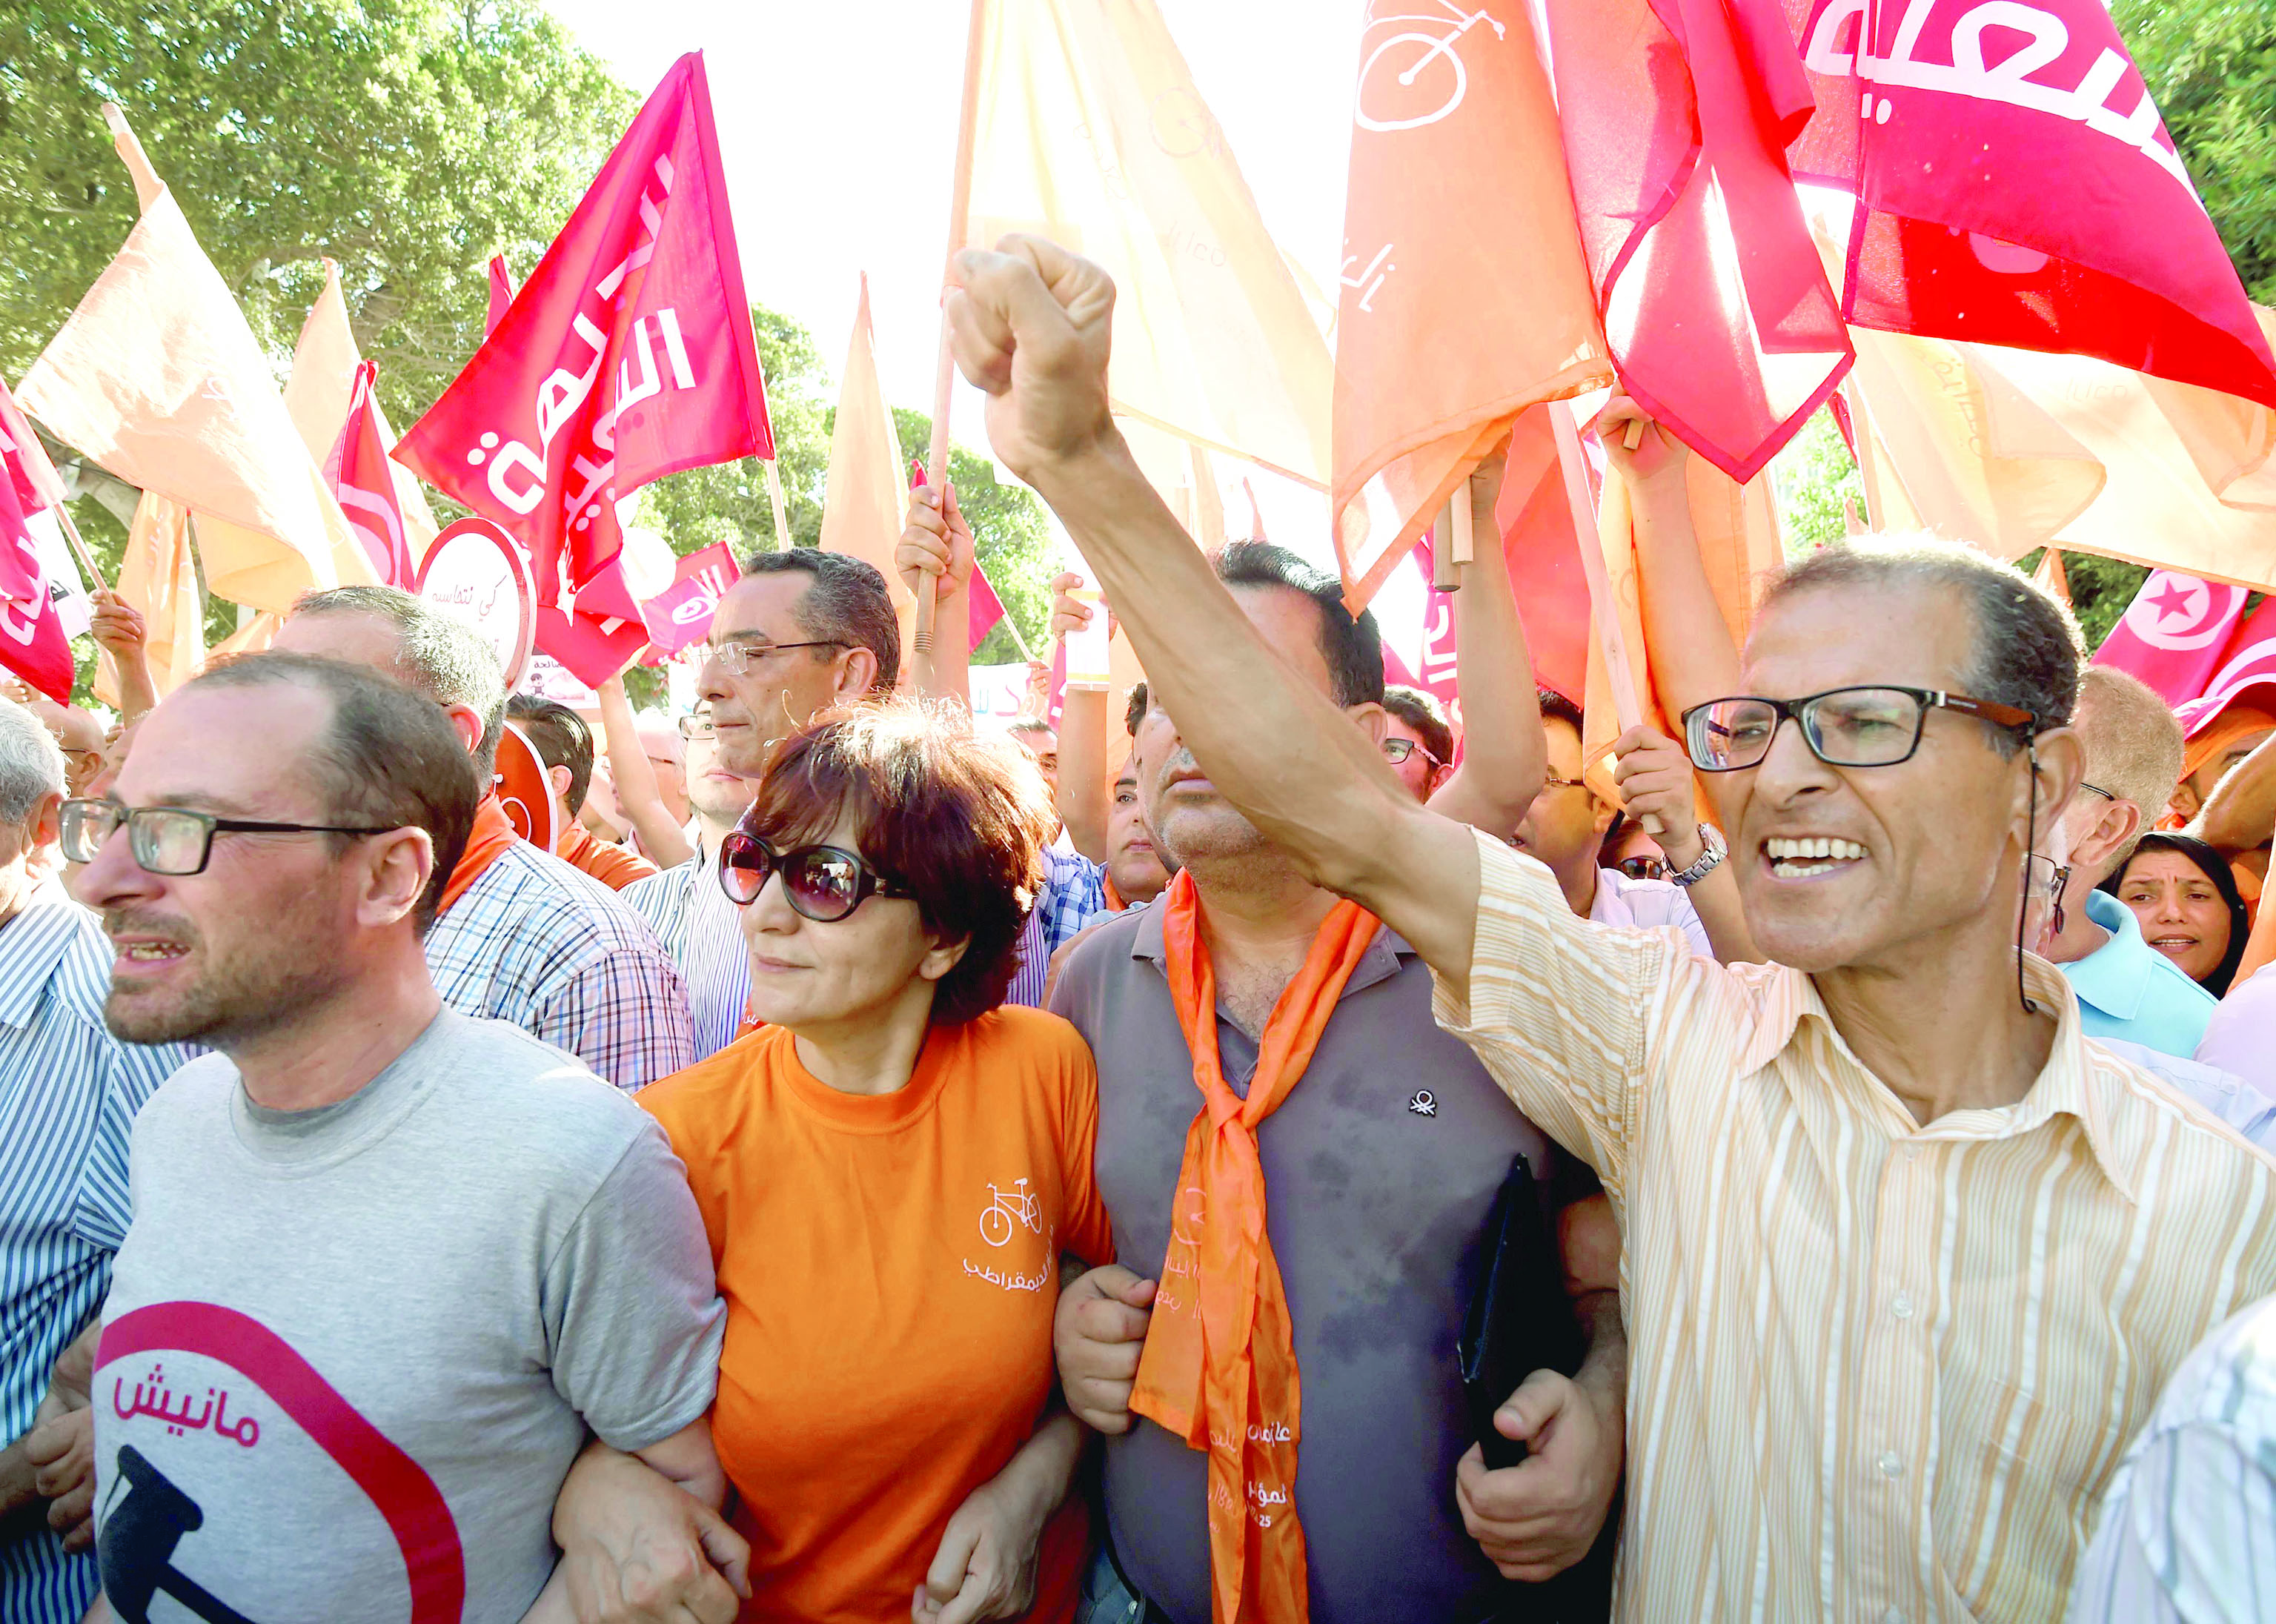 التونسيون يتظاهرون لـ "إسقاط الفساد"